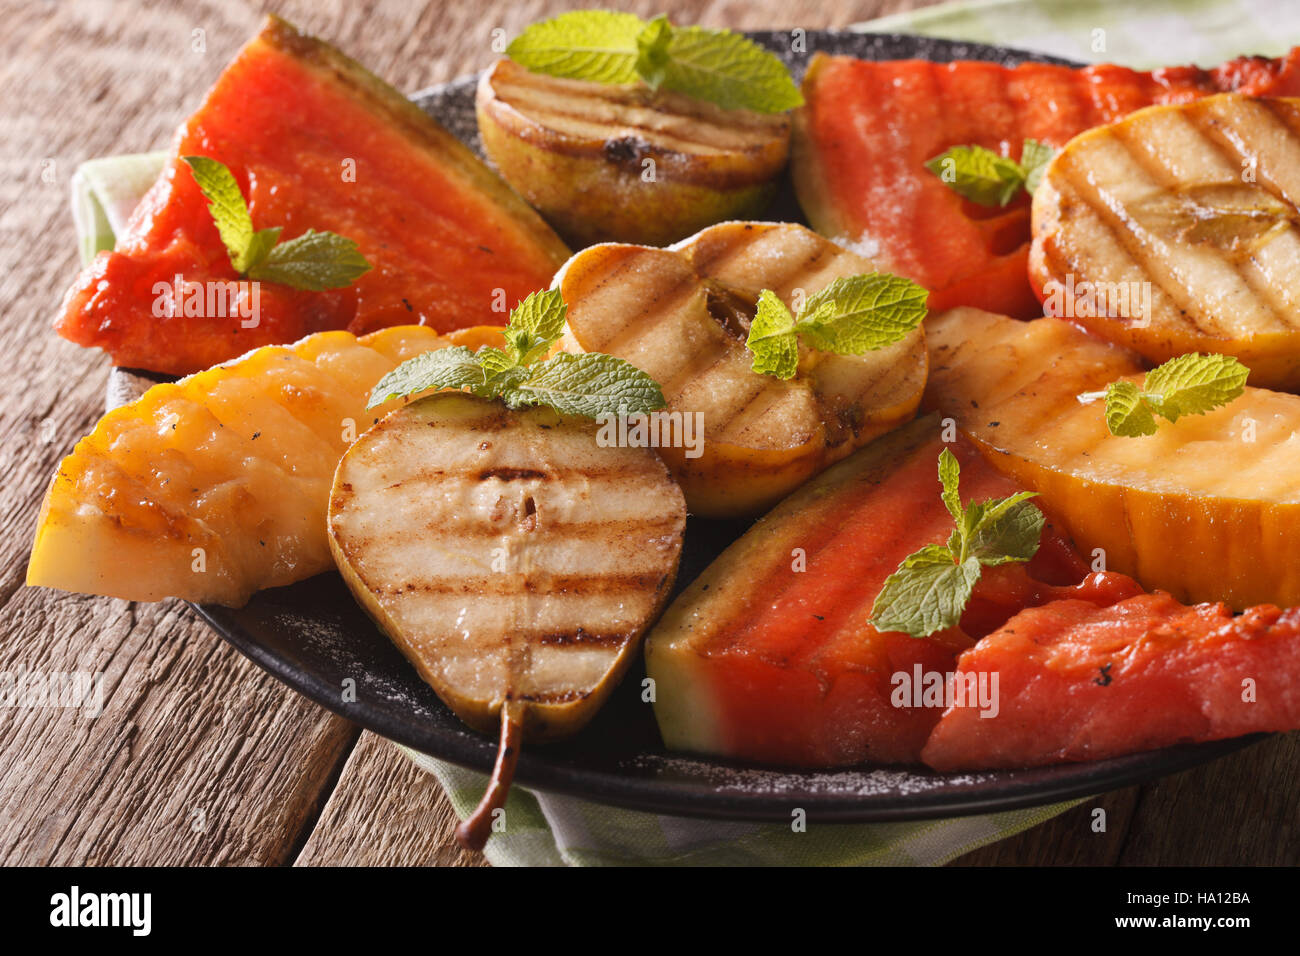 Obst der Saison vom Grill, Wassermelone, Melone, Apfel, Birne mit Minze hautnah auf einem Teller. horizontale Stockfoto